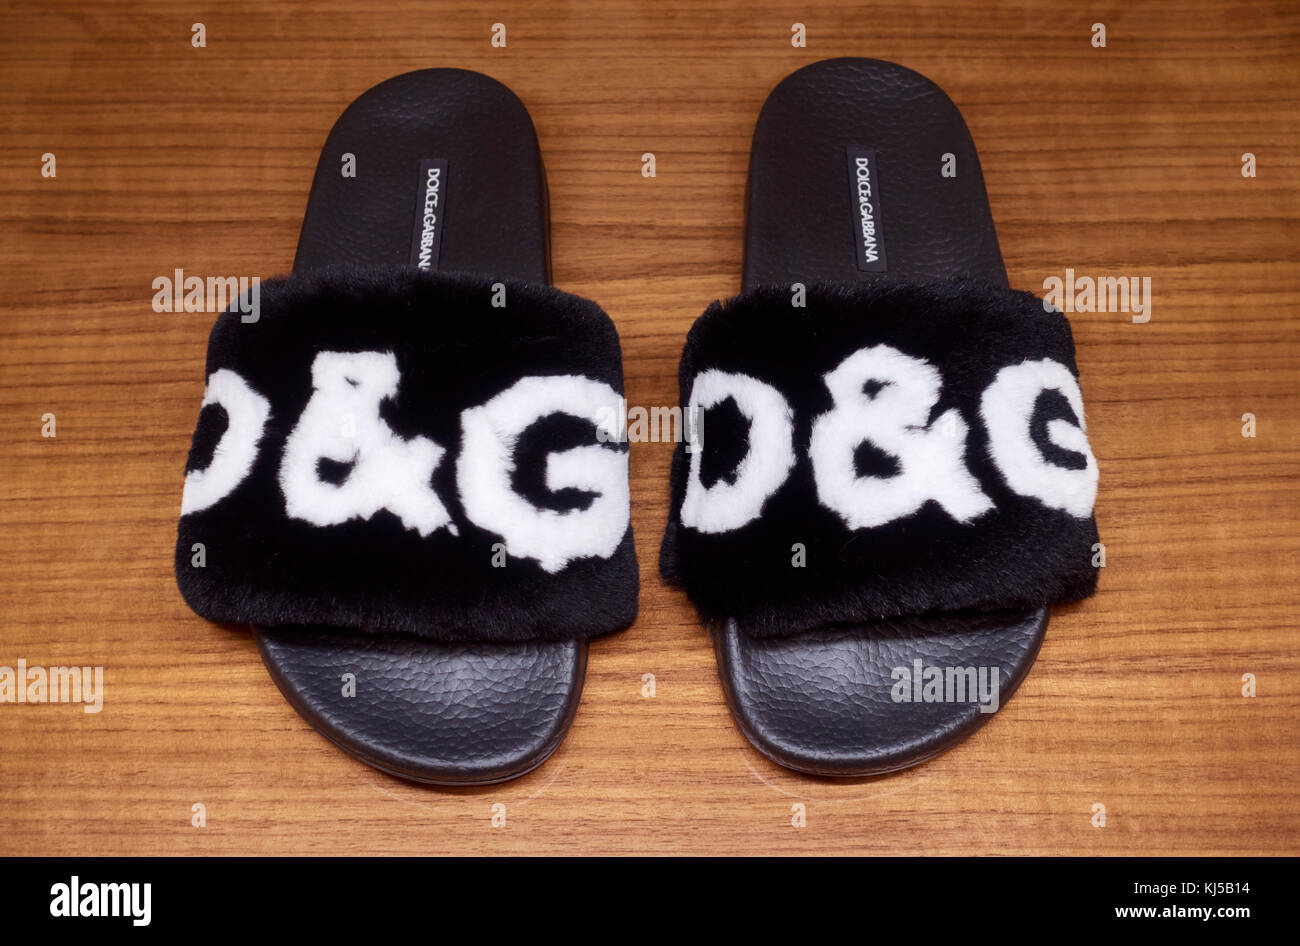 d&g slippers